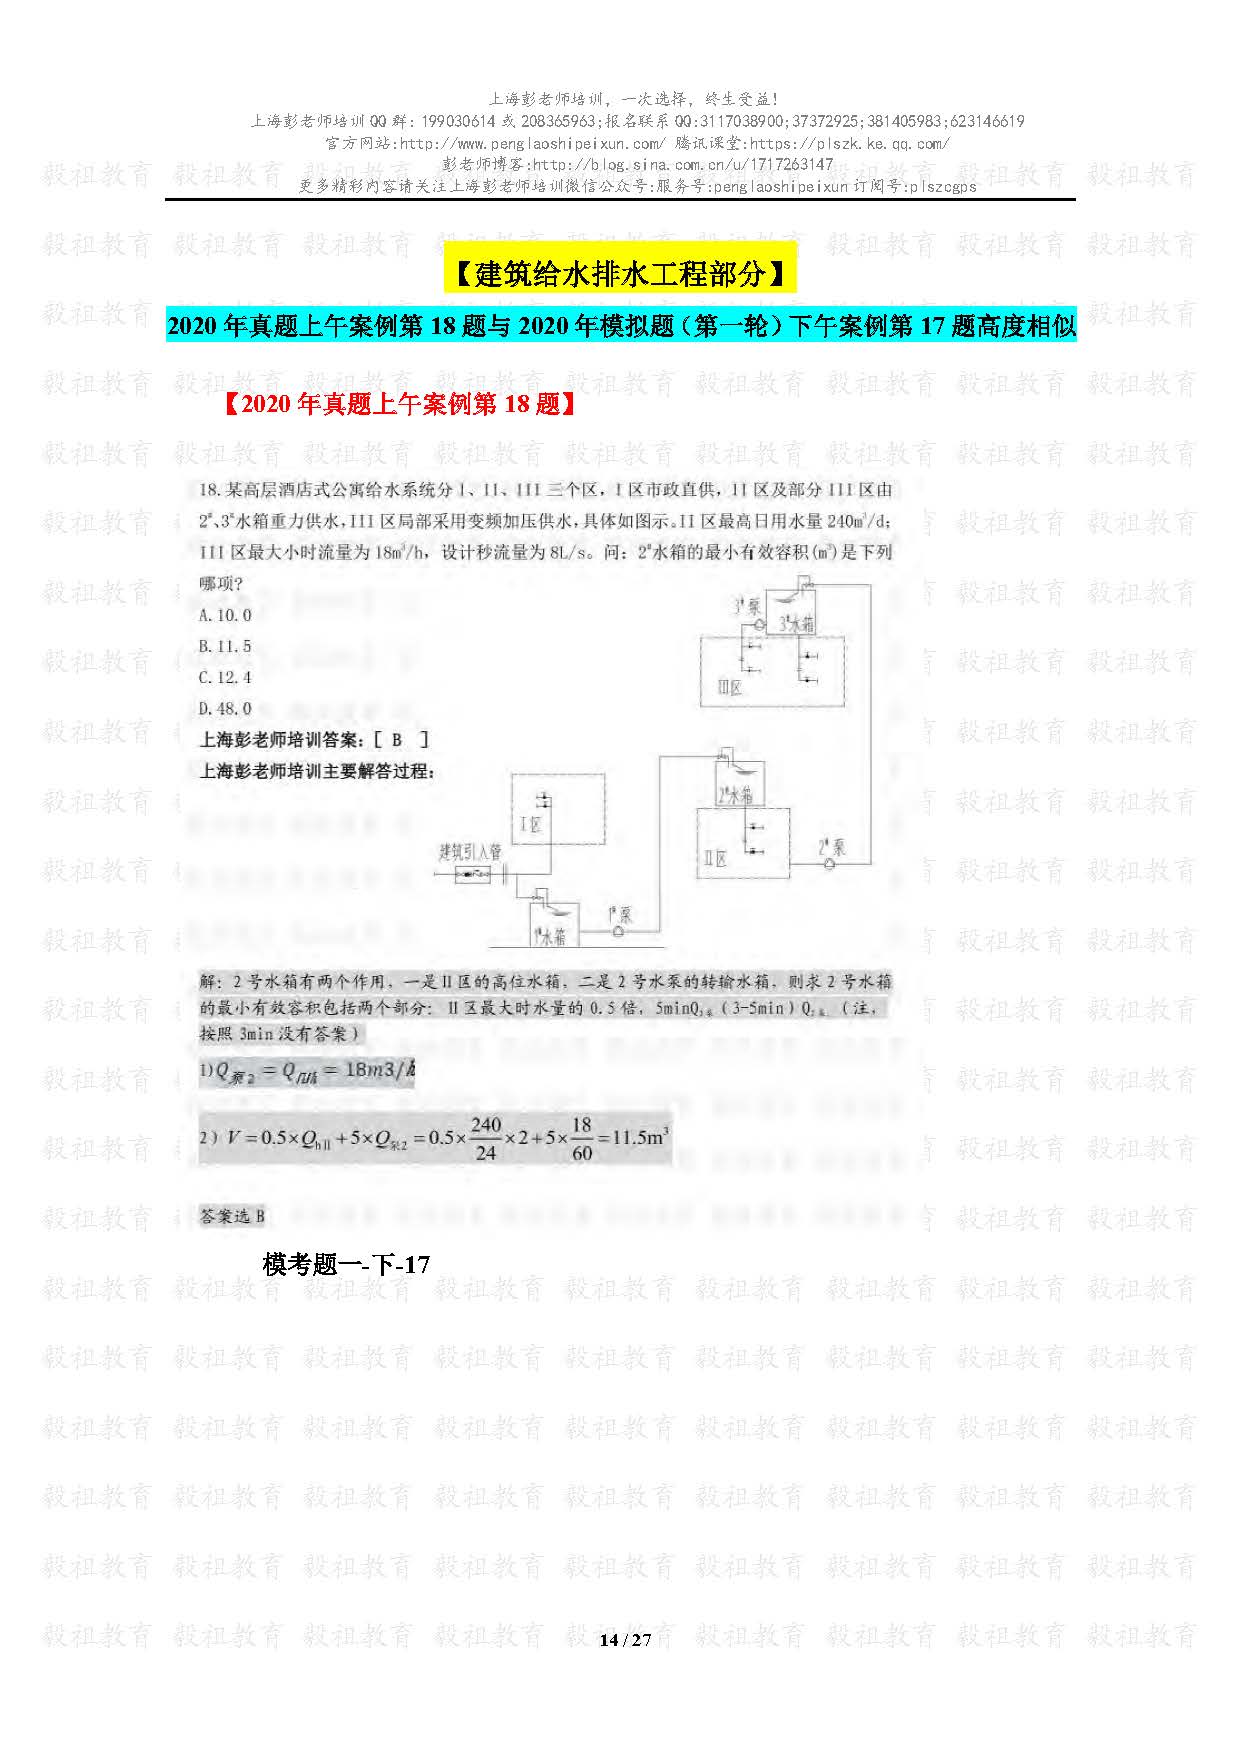 2020注册给排水考试真题与模考题相似度分析-上海彭老师培训_页面_14.jpg.jpg